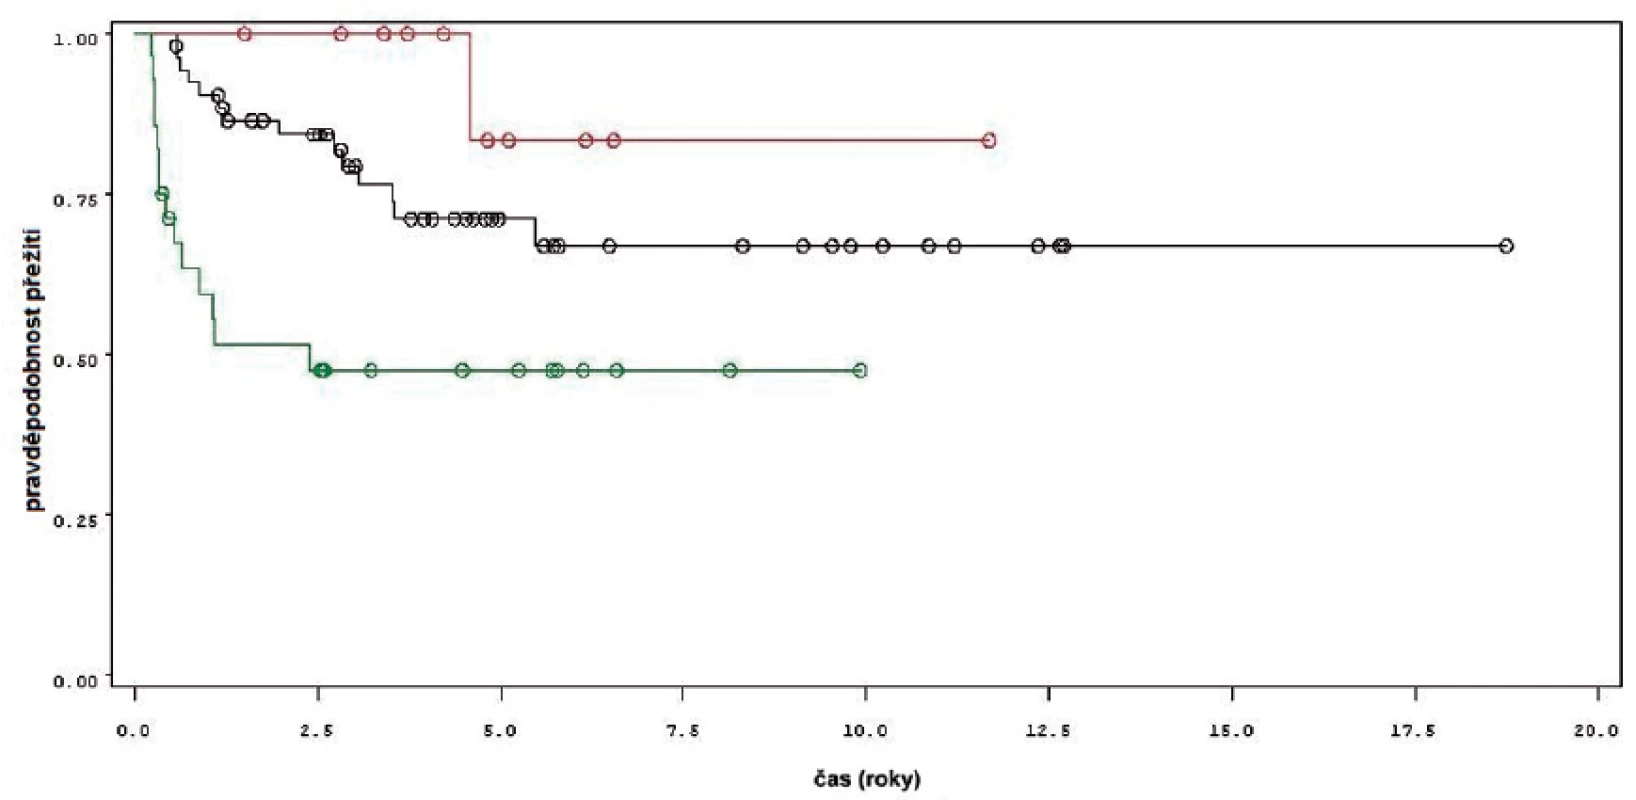 Přežití bez recidivy nádoru u pacientů léčených pouze úvodním cyklem šesti instilací BCG (zelená křivka, 28 pacientů), u pacientů s udržovací léčbou kratší než 1 rok (černá křivka, 53 pacientů) a u pacientů s udržovací léčbou delší než jeden rok (červená křivka, 11 pacientů)
Fig. 3. Recurrence free survival in patients treated with induction course BCG only (green line, 28 patients), in patients treated with maintenance BCG up to 1 year (black line, 53 patients) and in patients treated with maintenance BCG longer that 1 year (red line, 11 patients).